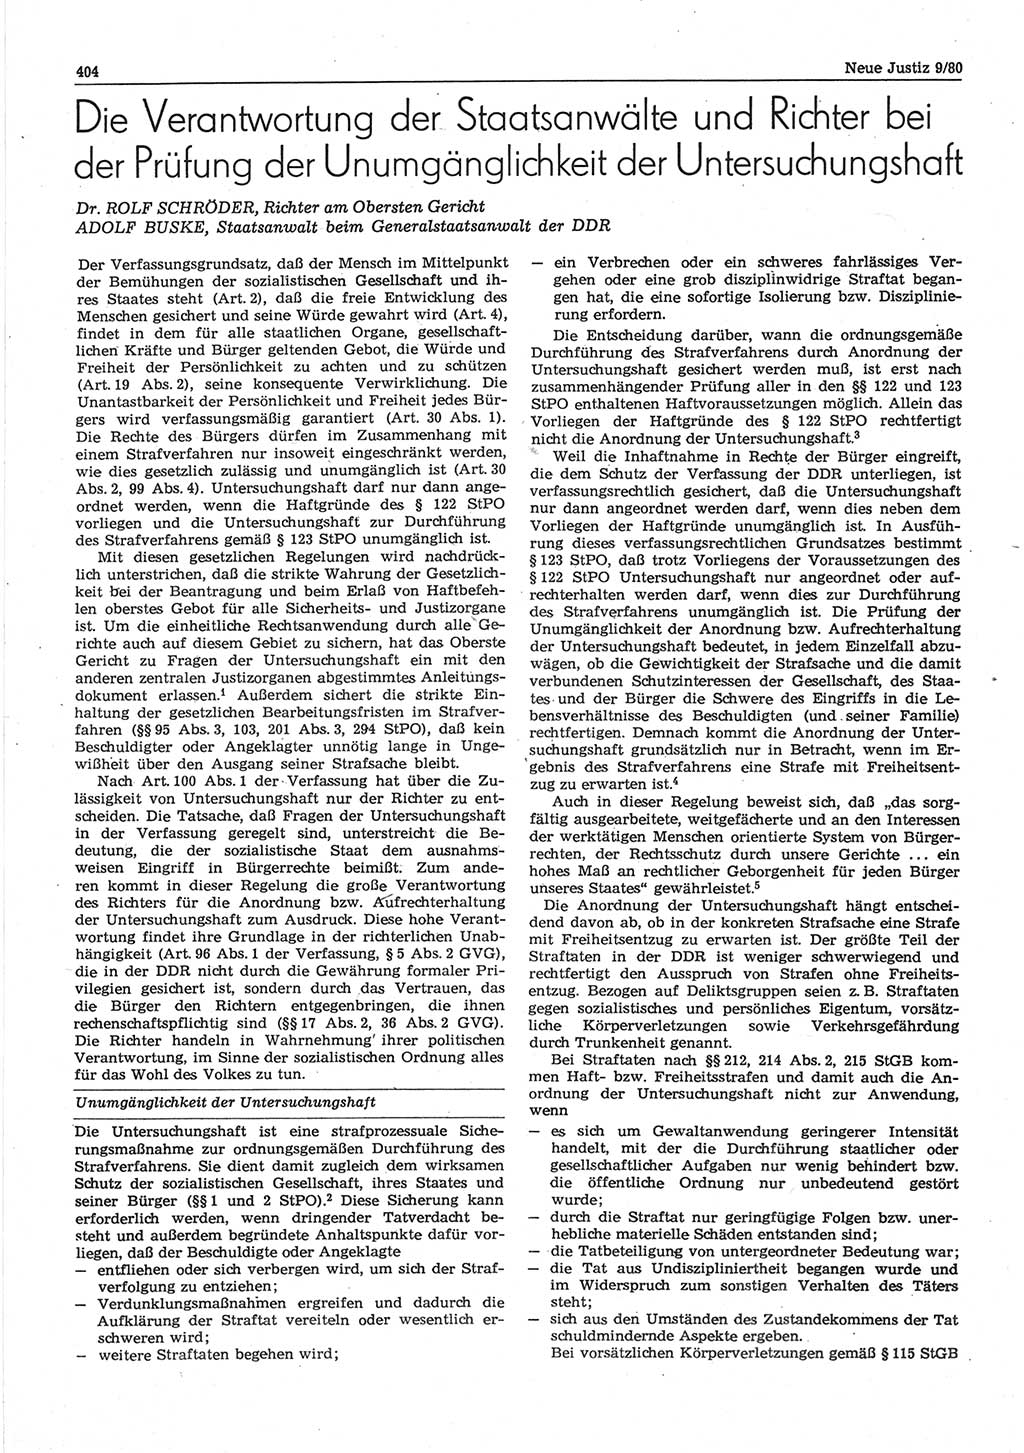 Neue Justiz (NJ), Zeitschrift für sozialistisches Recht und Gesetzlichkeit [Deutsche Demokratische Republik (DDR)], 34. Jahrgang 1980, Seite 404 (NJ DDR 1980, S. 404)